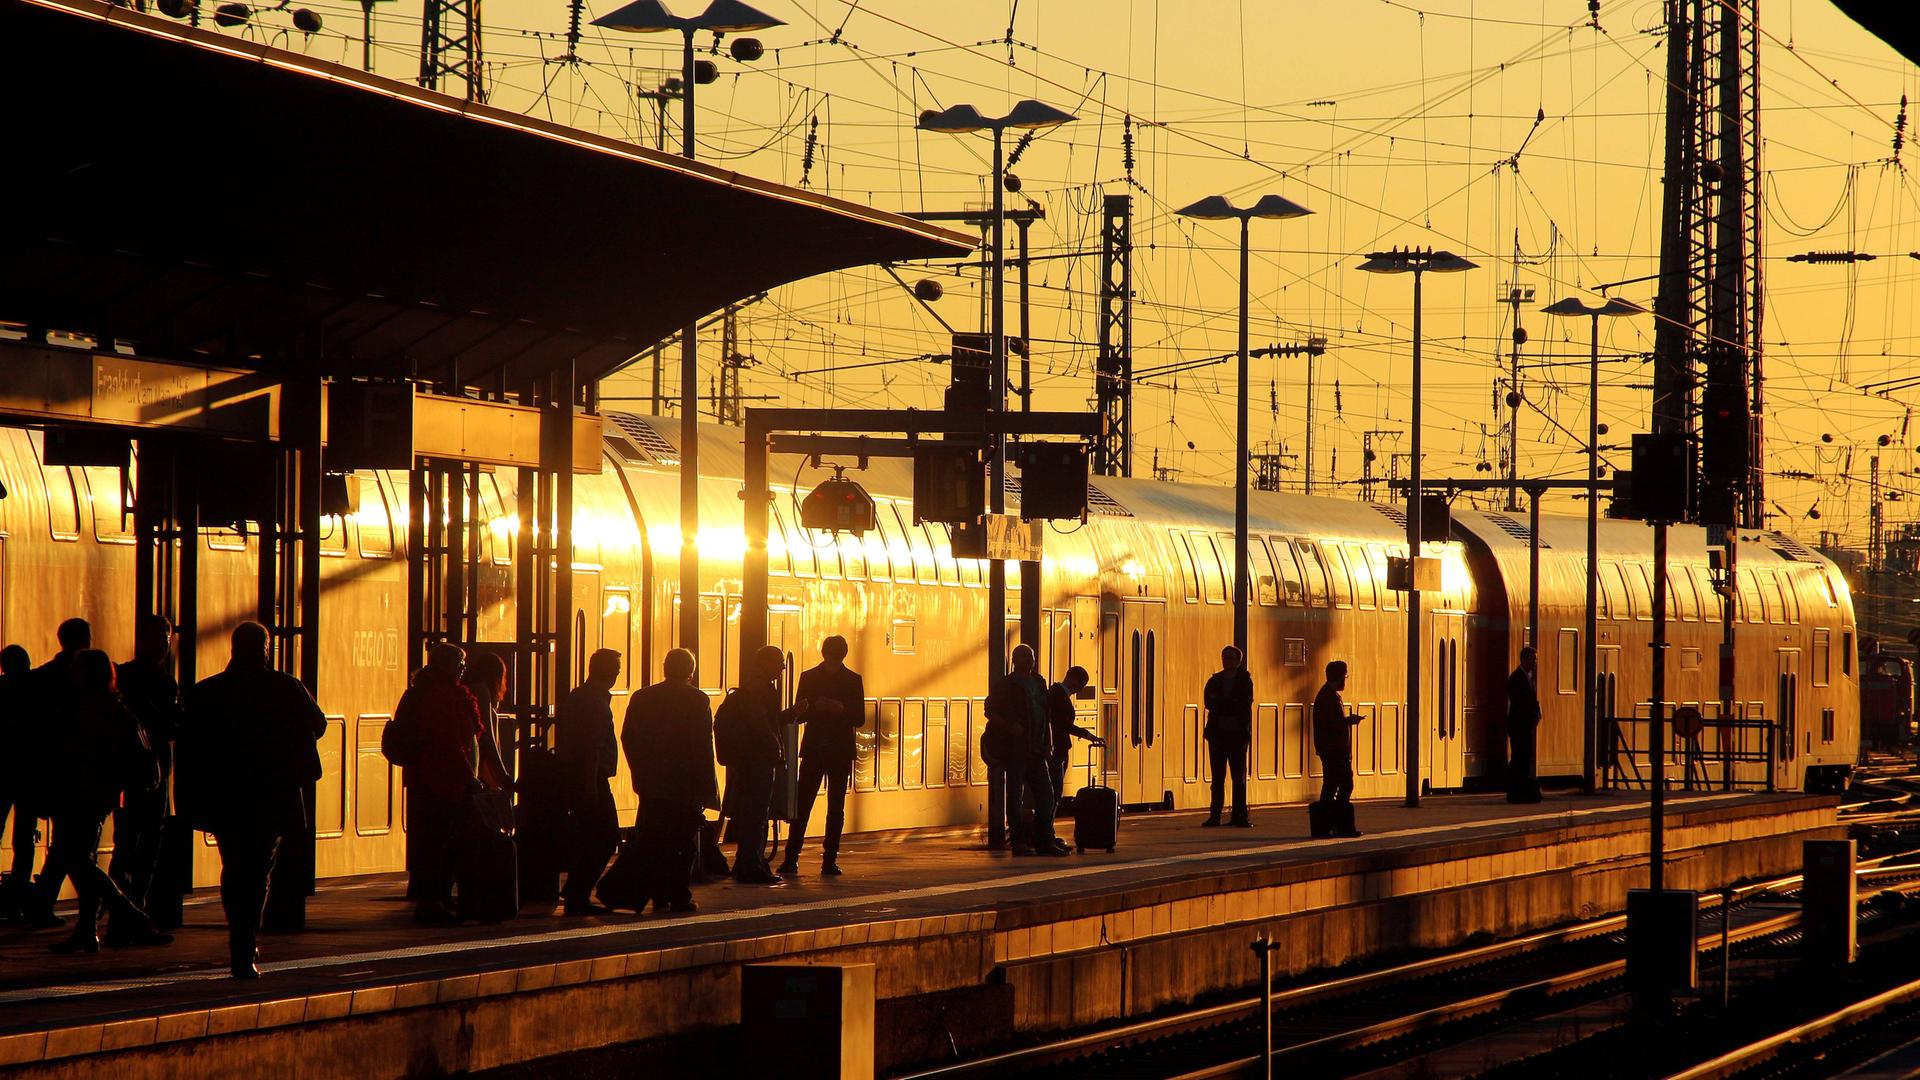 Fahrgäste auf einem Bahnsteig mit einem einfahrenden Nahverkehrszug der Deutschen Bahn in der Abendsonne am Hauptbahnhof in Frankfurt am Main.